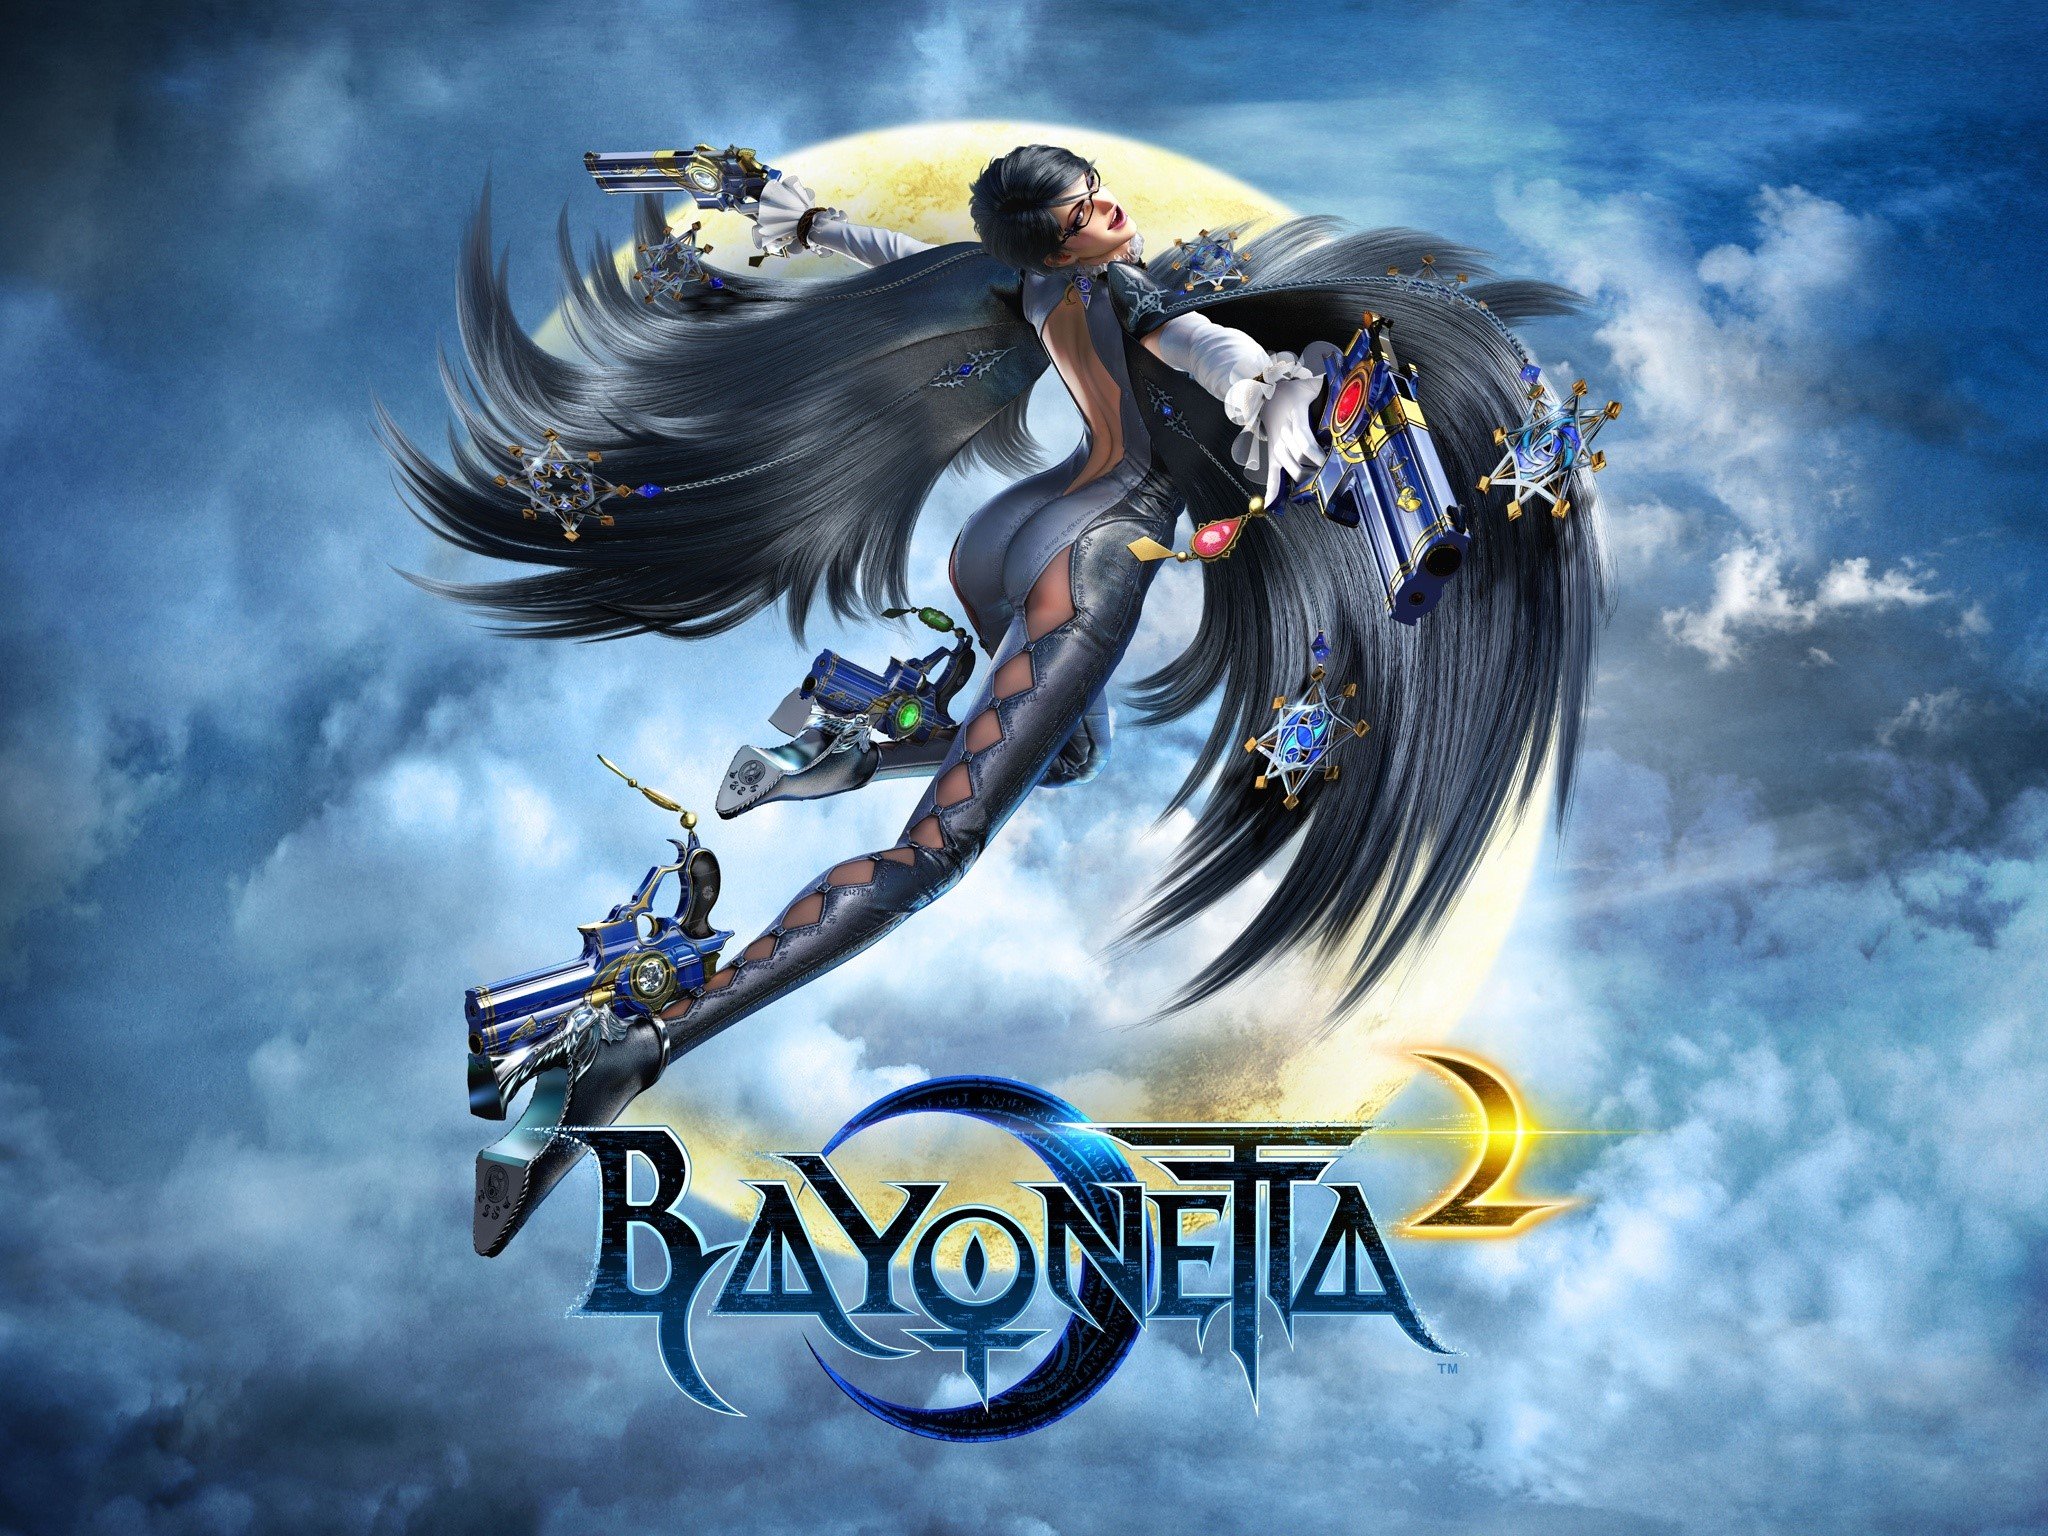 Fondos de pantalla Bayonetta 2